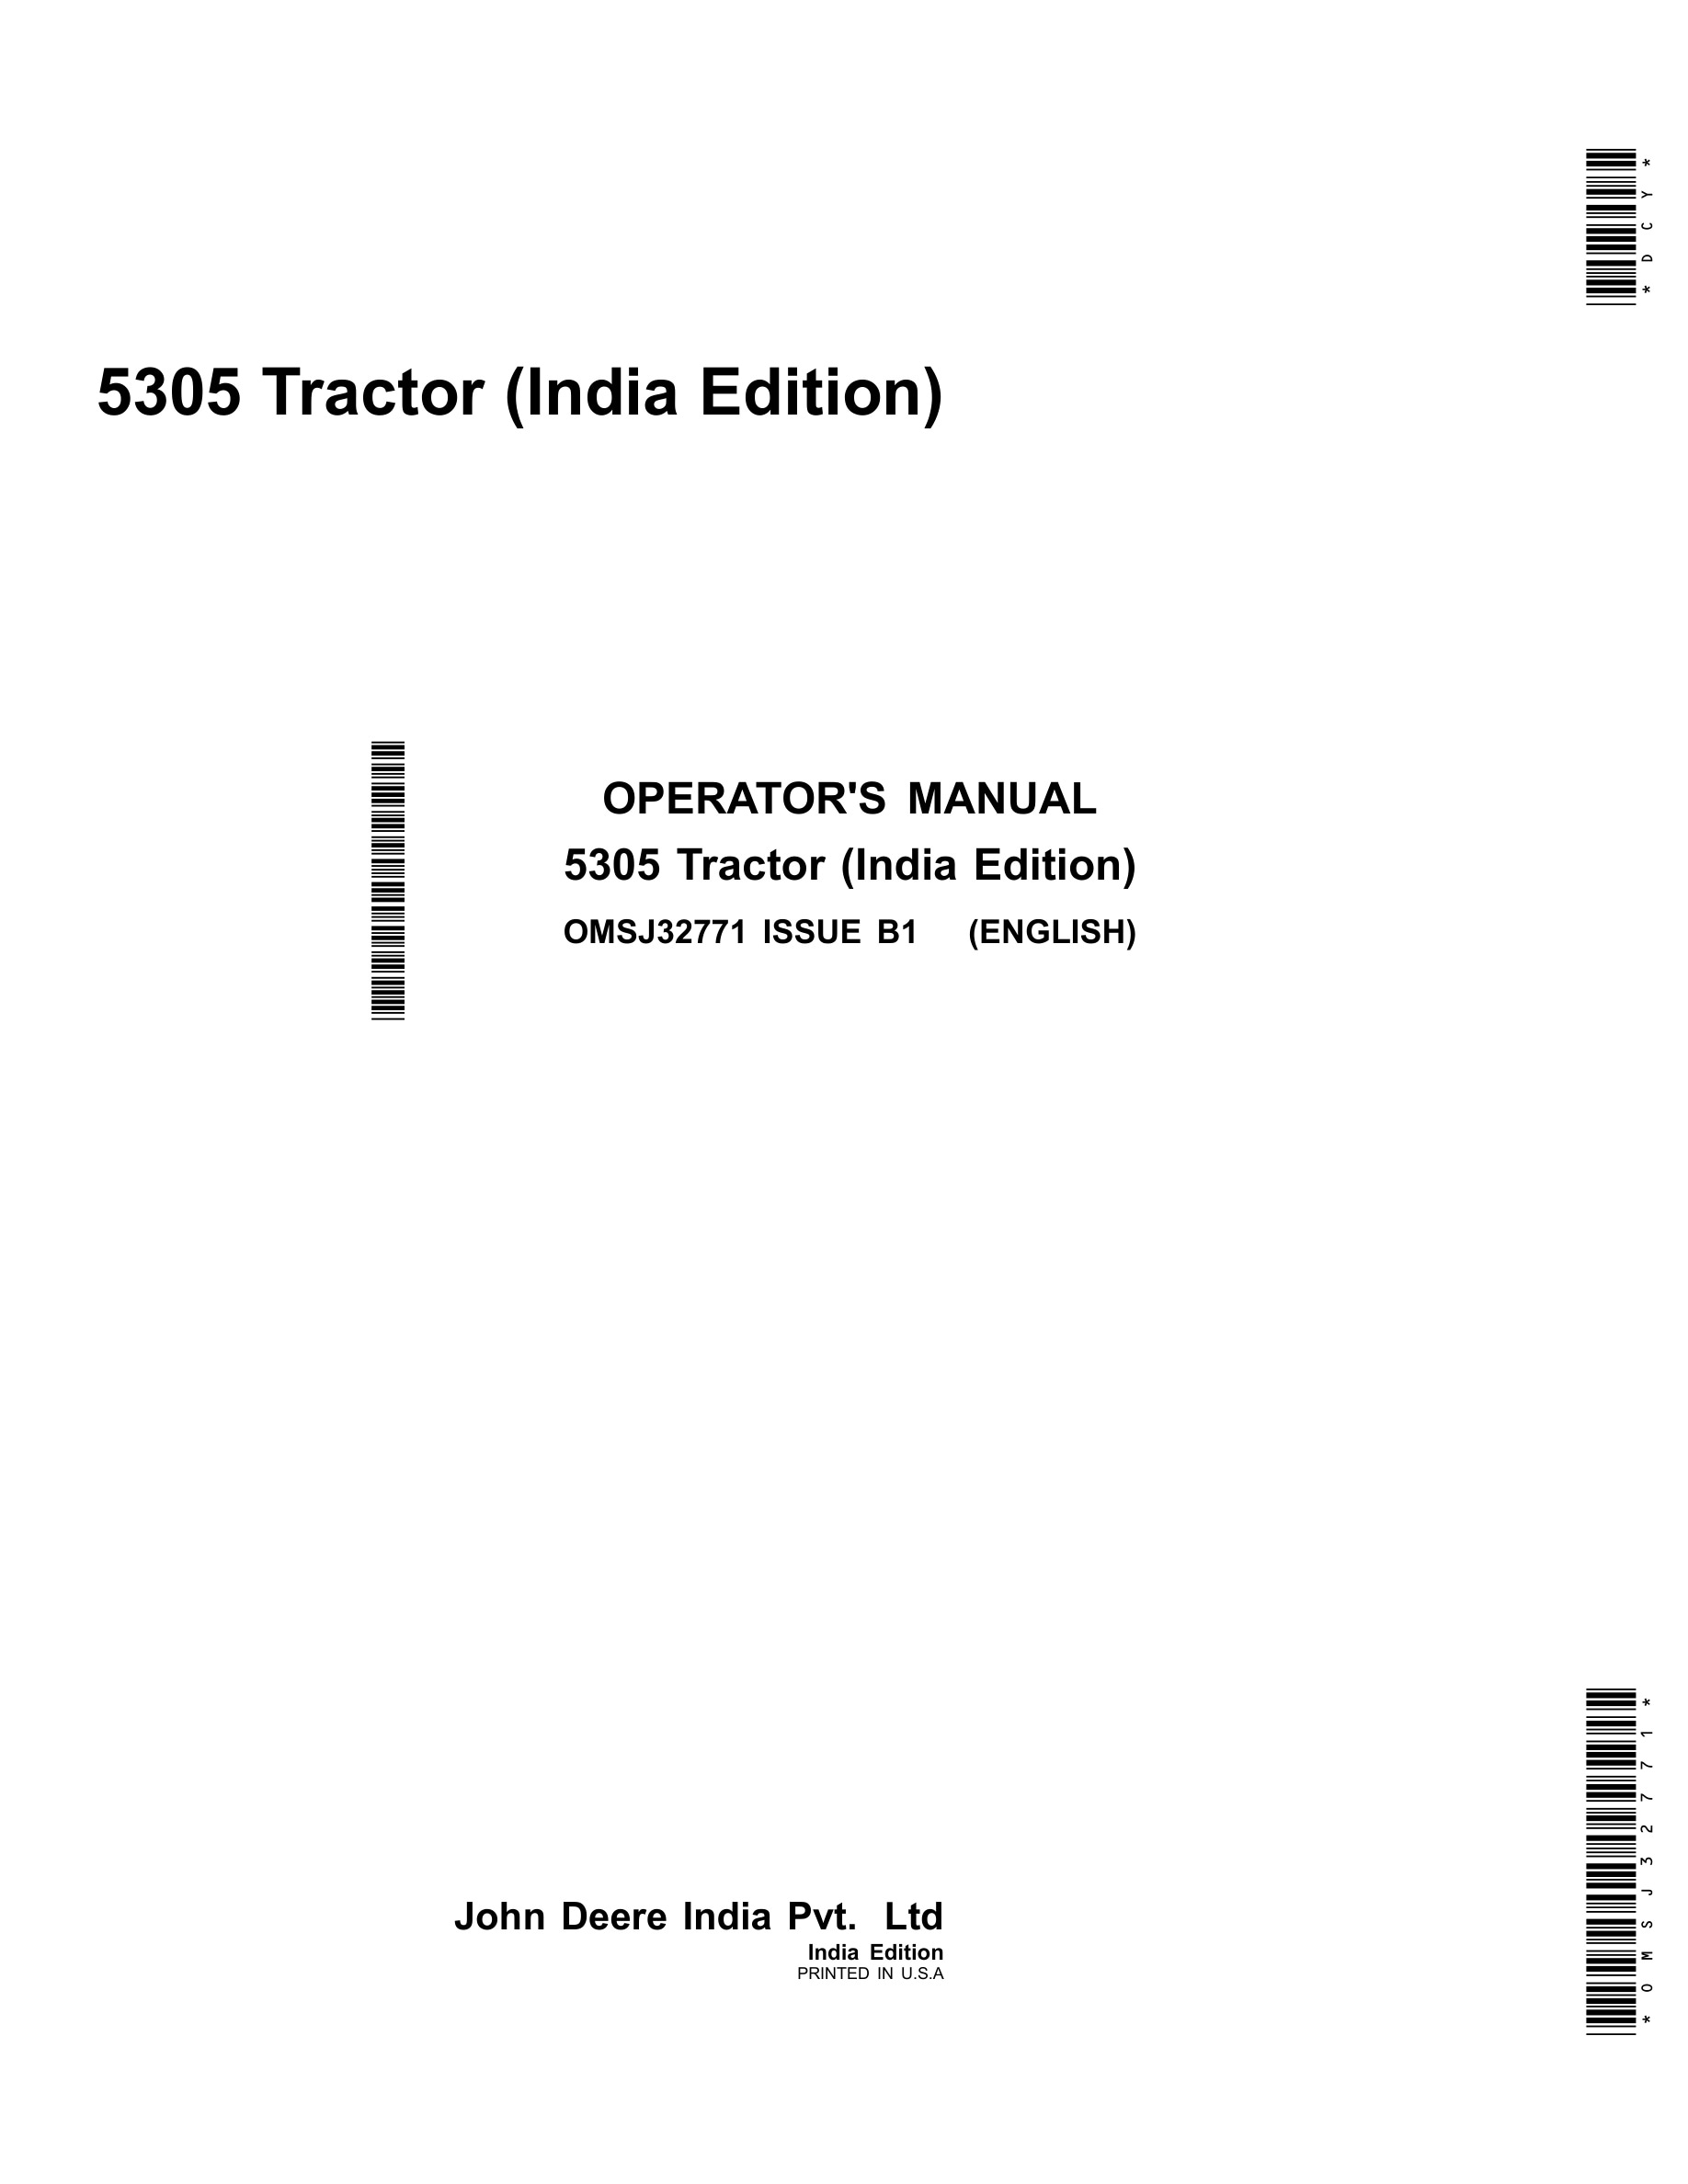 John Deere 5305 Tractors Operator Manual OMSJ32771-1